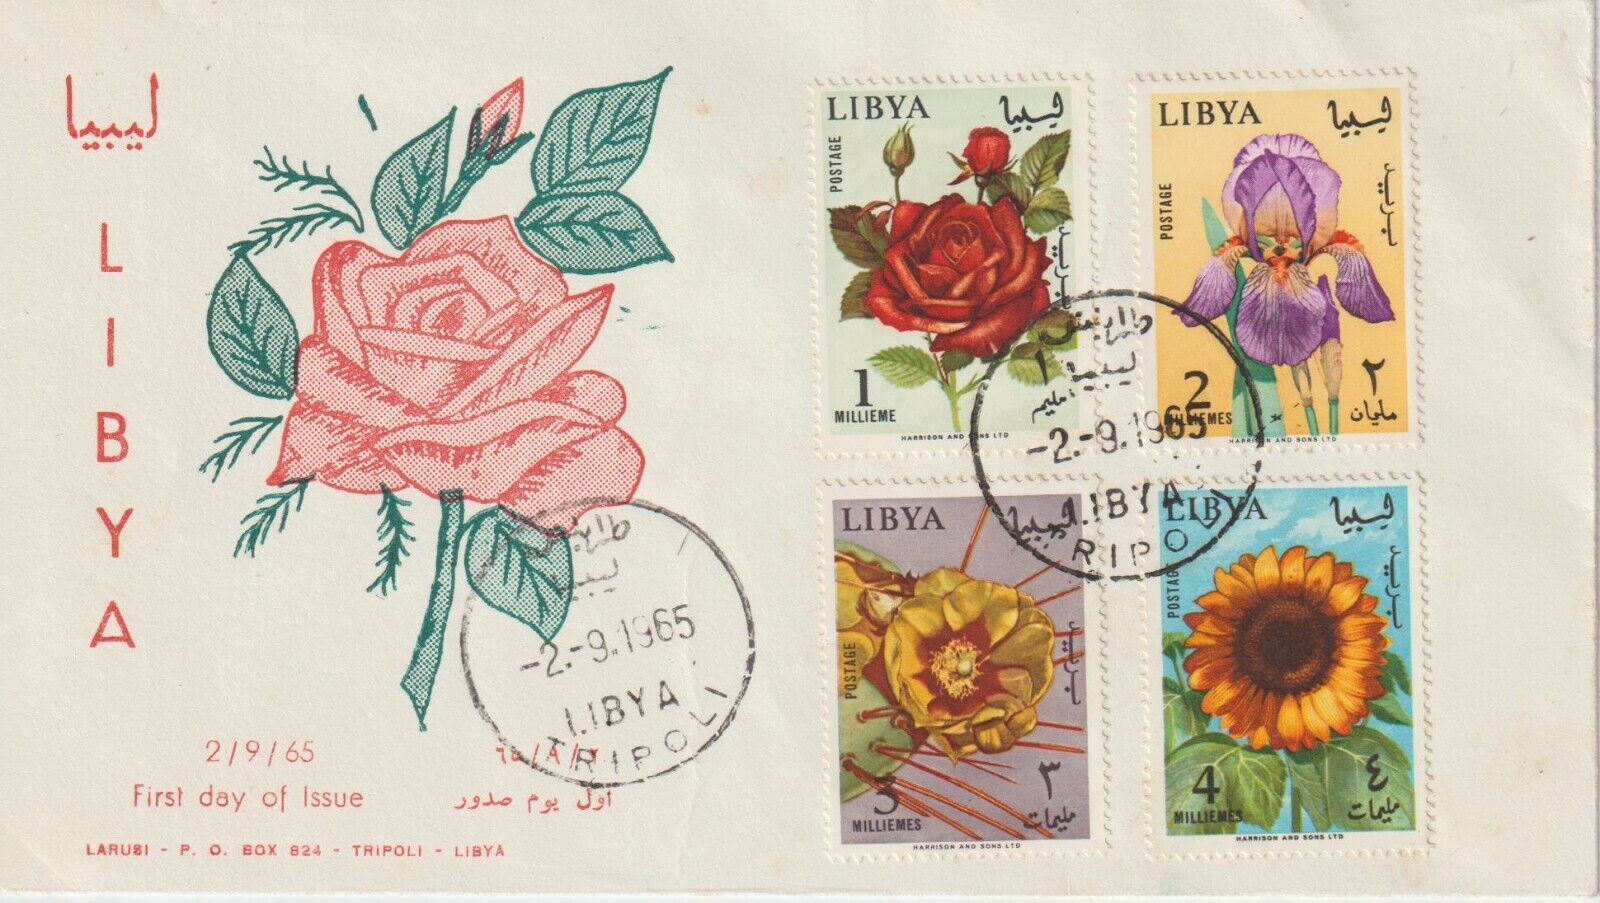       1965 LIBYA FDC FUL SET   FLOWERS